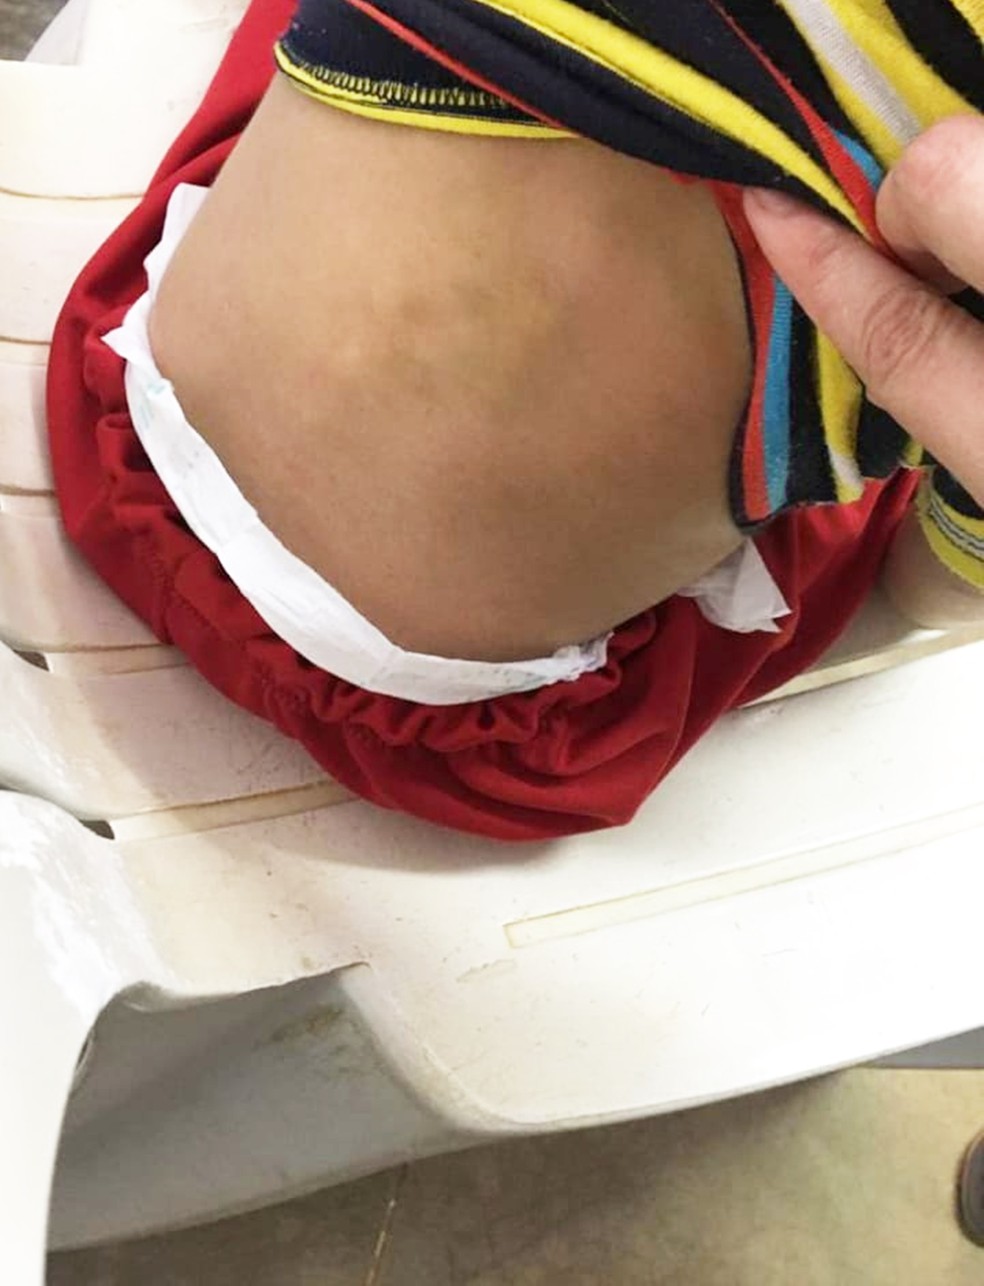 CrianÃƒÂ§a apresentava hematomas pelo corpo Ã¢â‚¬â€ Foto: PolÃƒÂ­cia Civil do RN/DivulgaÃƒÂ§ÃƒÂ£o